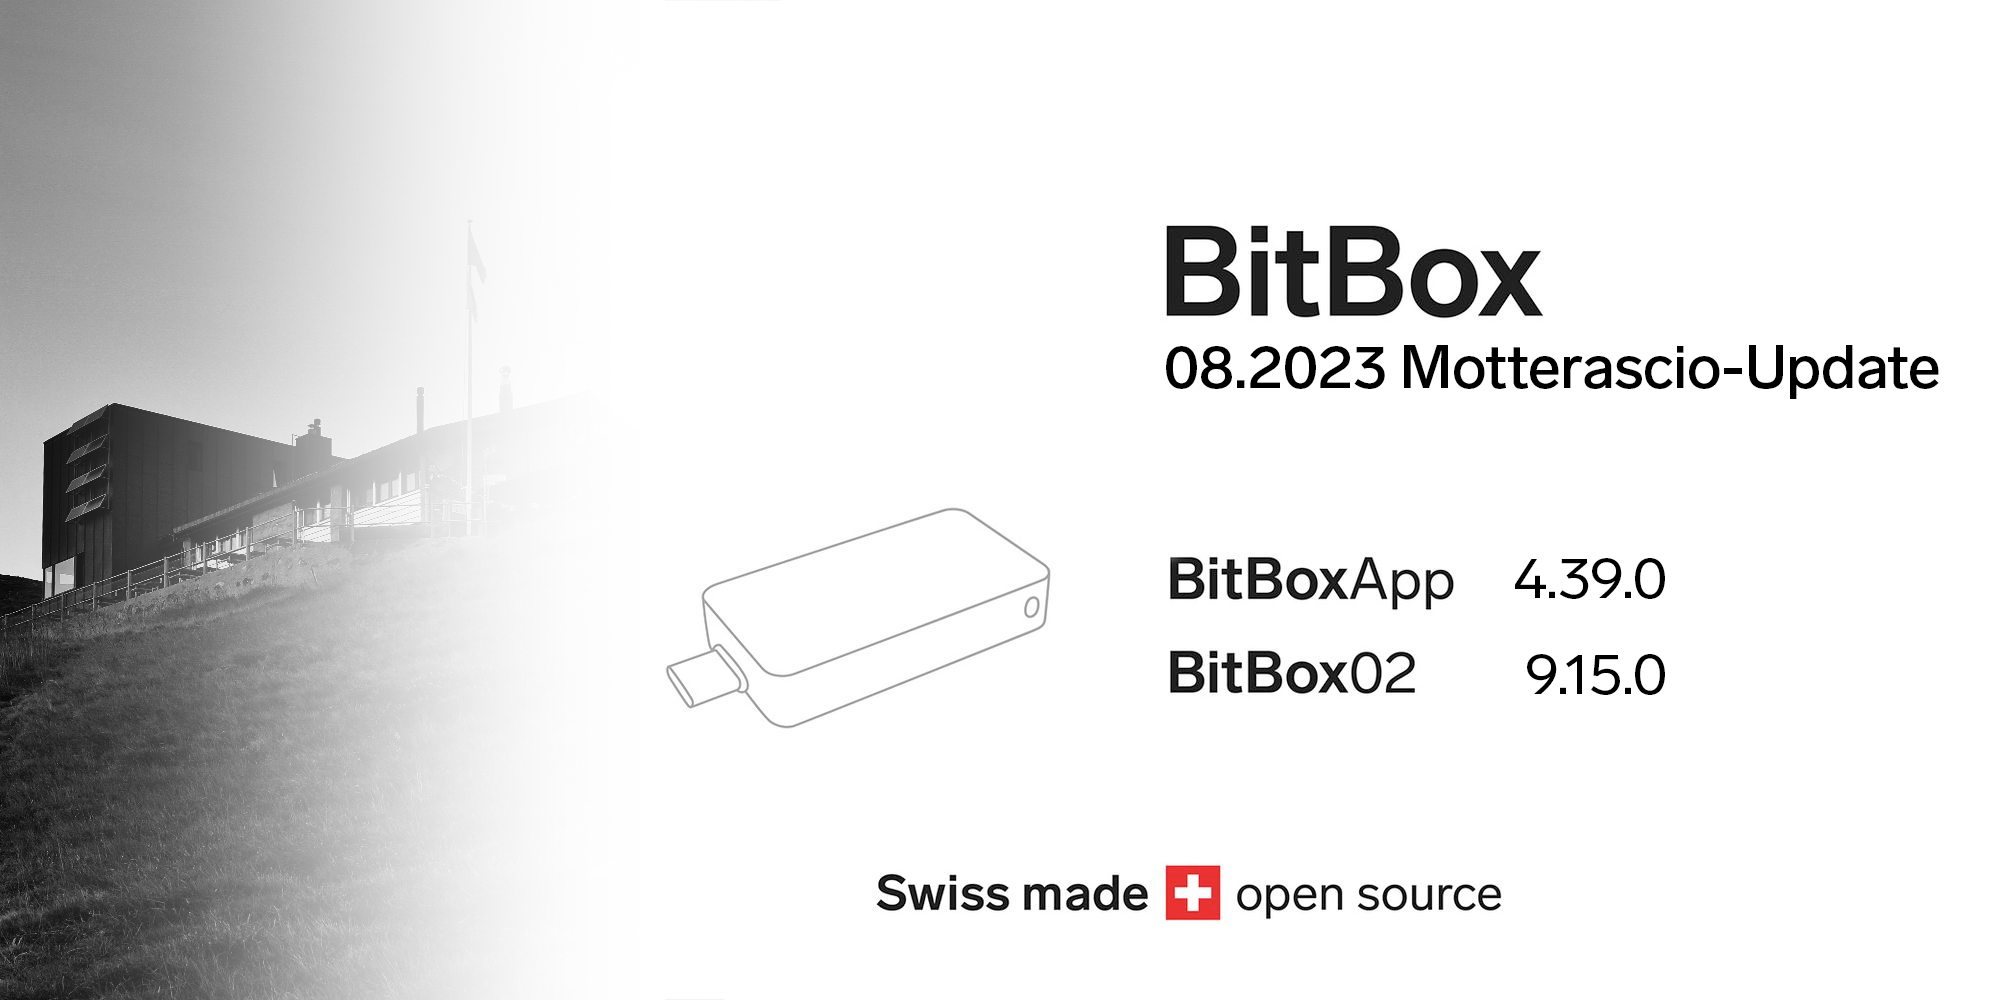 BitBox 08.2023 Motterascio-Update